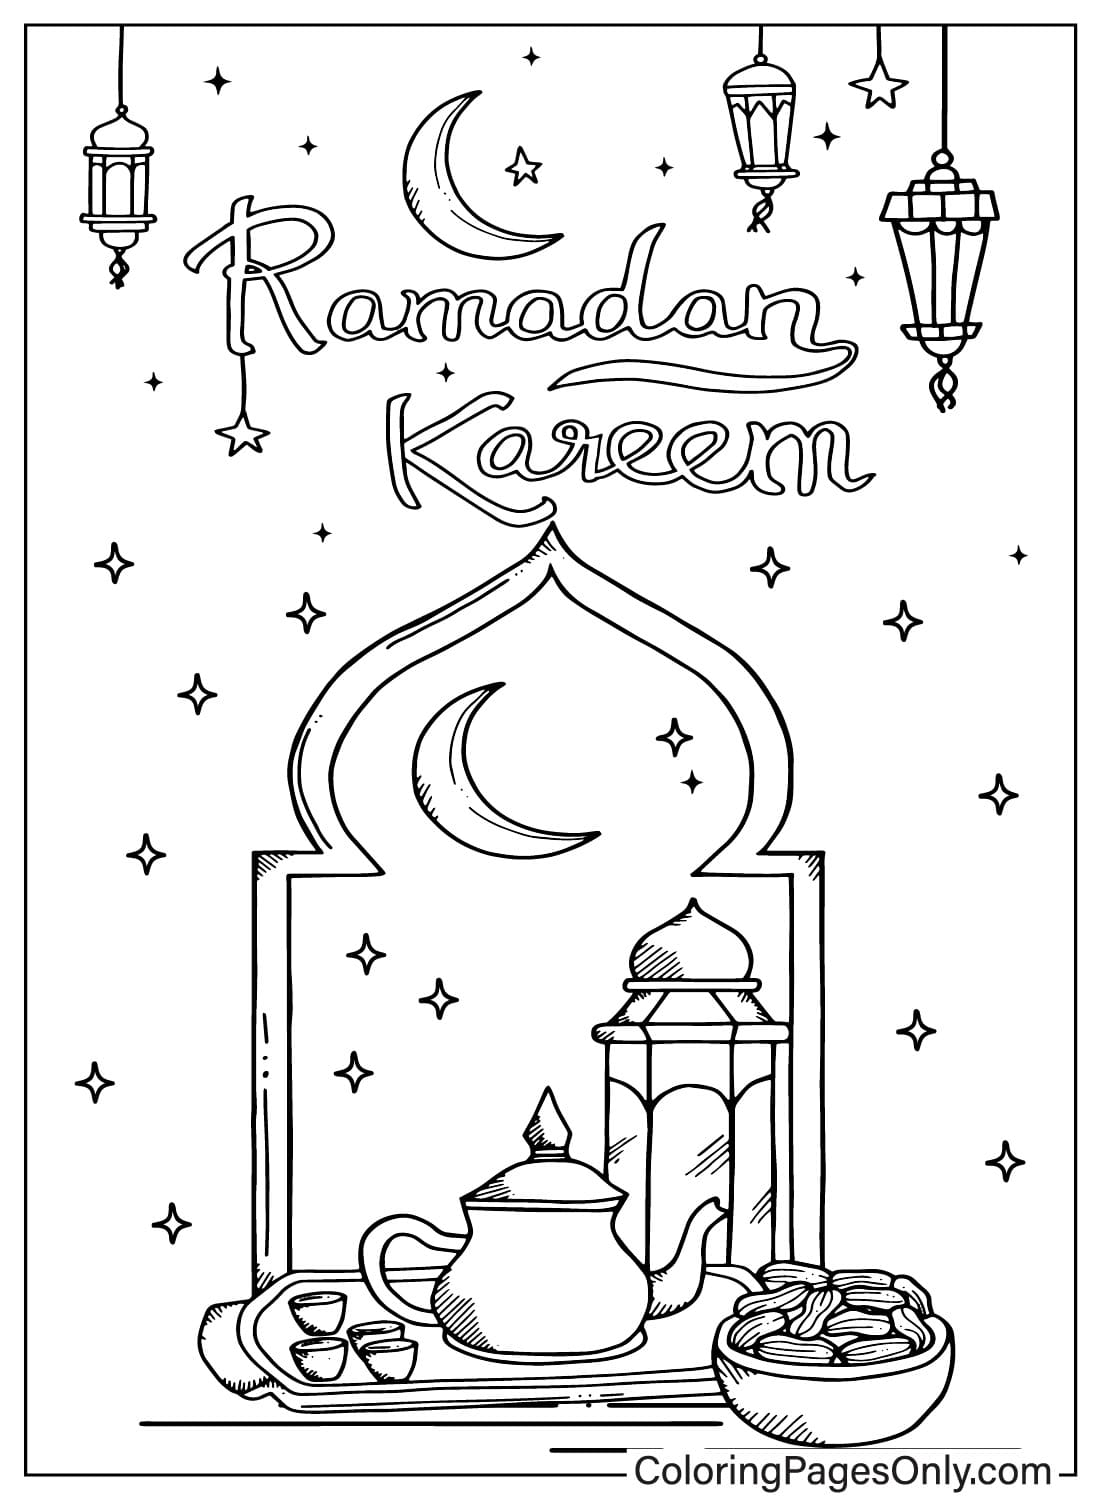 Раскраска Рамадан для печати из Рамадана